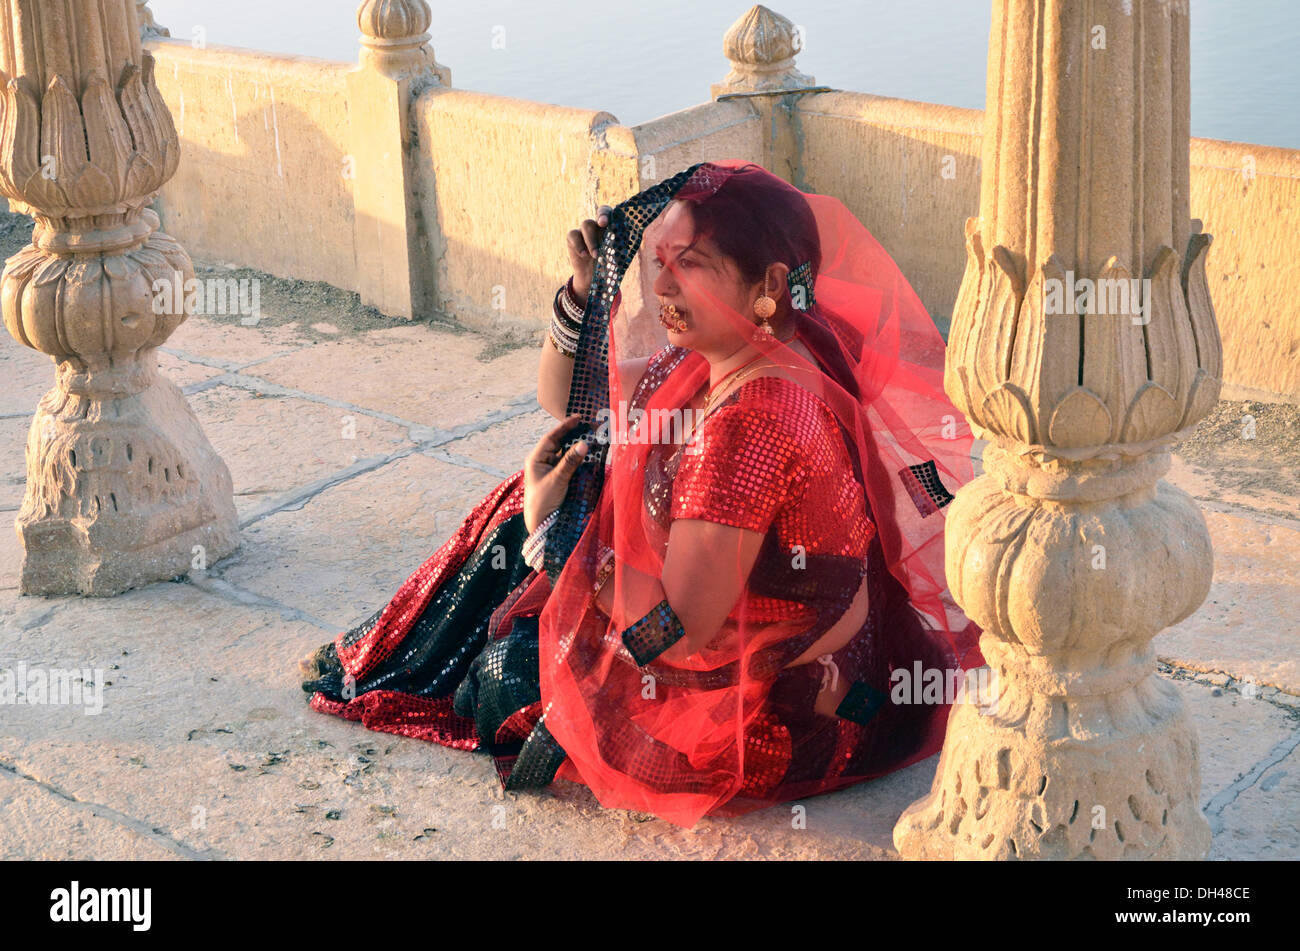 Femme en voile en costume du Rajasthan Rajasthan Inde Asie assis MR# 704J Banque D'Images